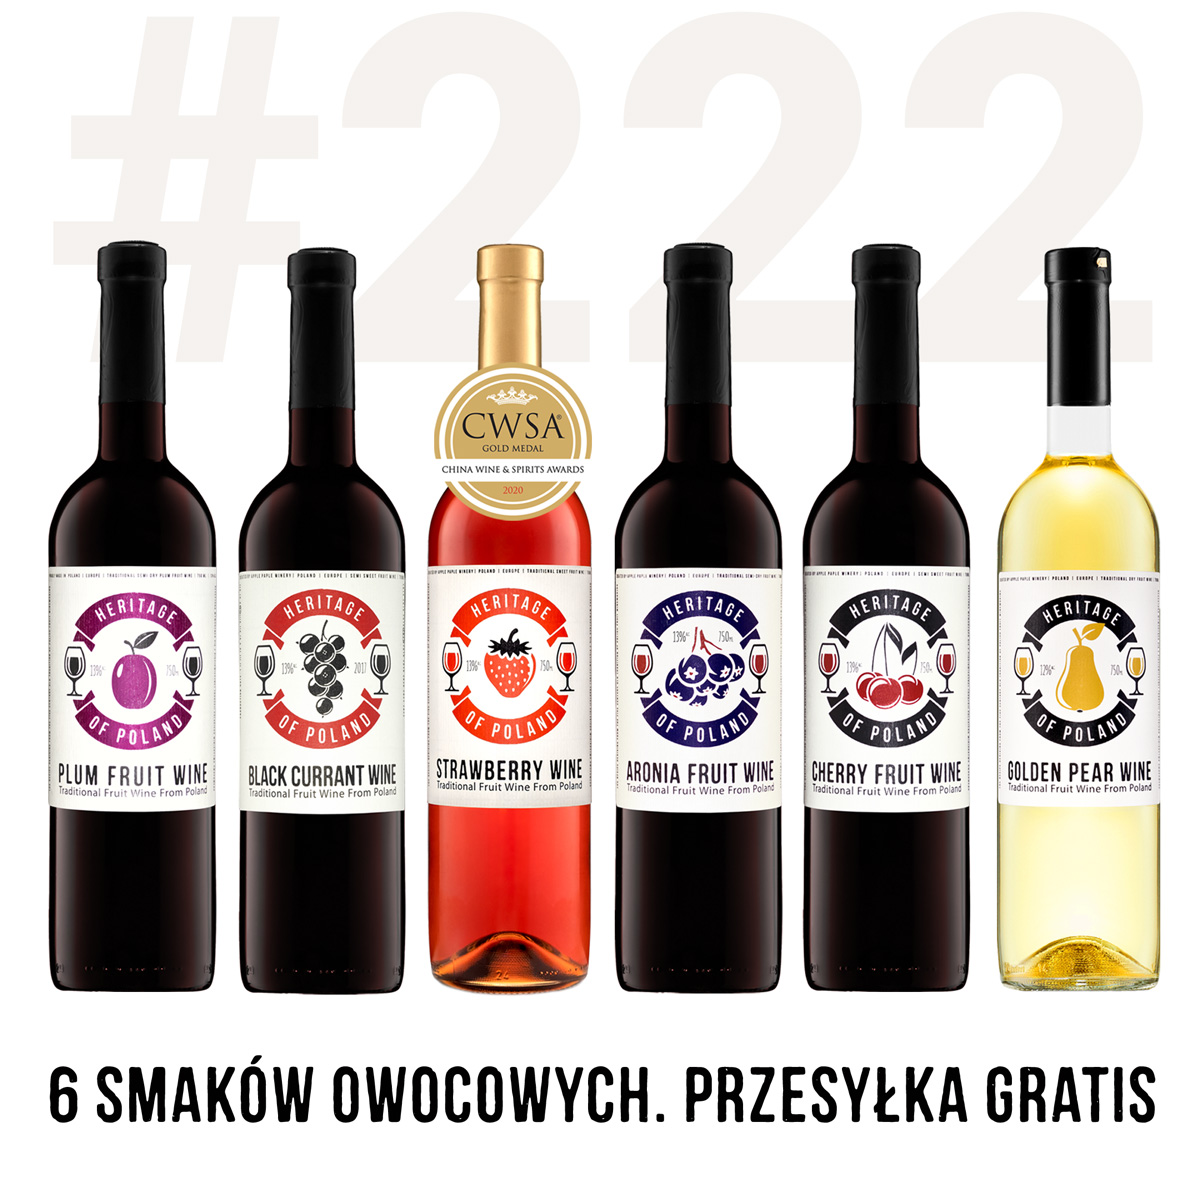 Zestaw 6-ciu win Heritage of Poland za 222 pln